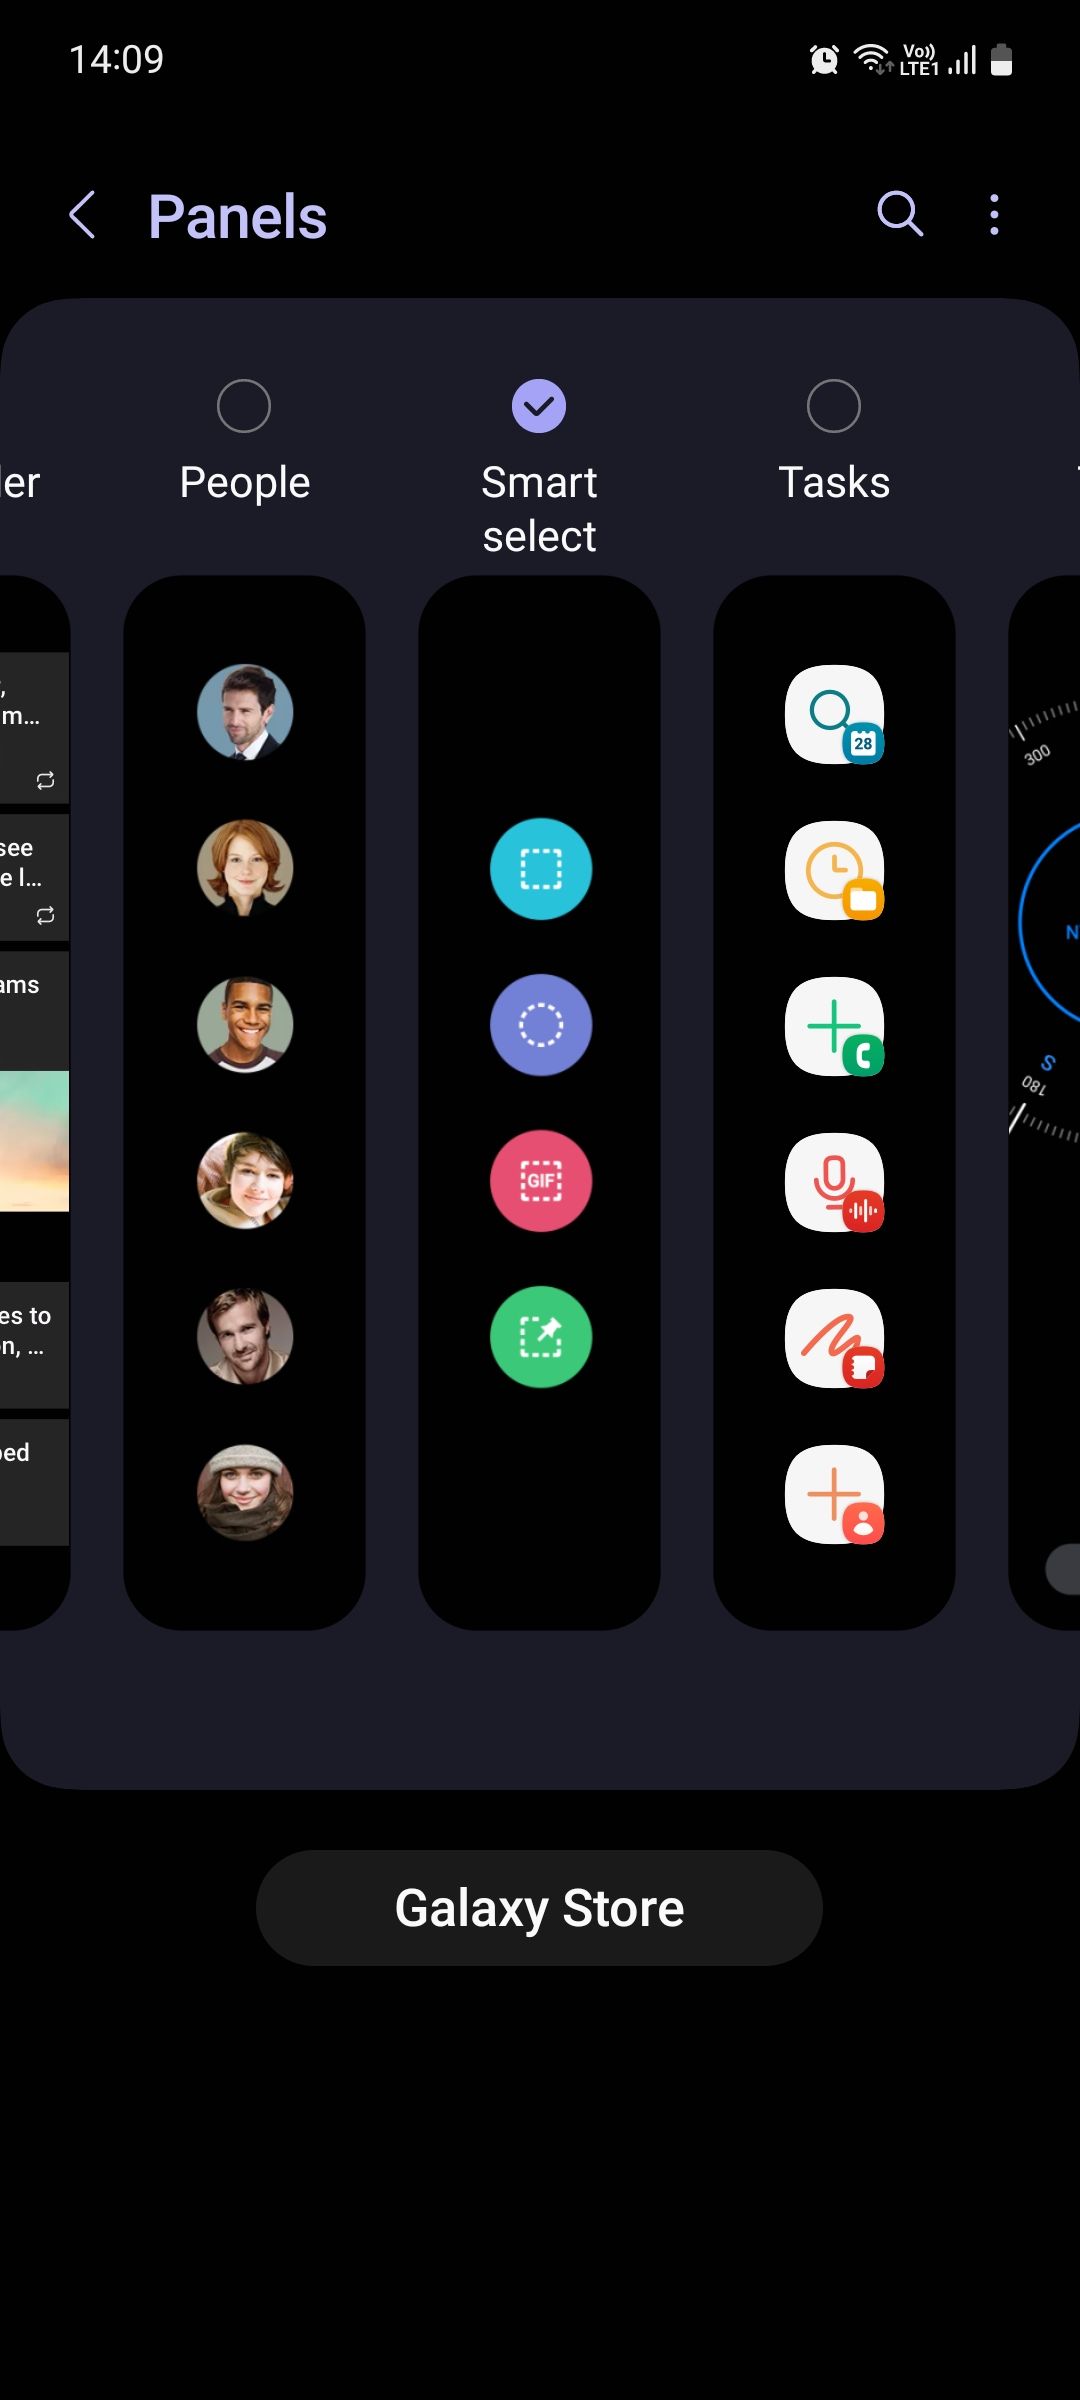 Samsung One UI Smart select edge panel